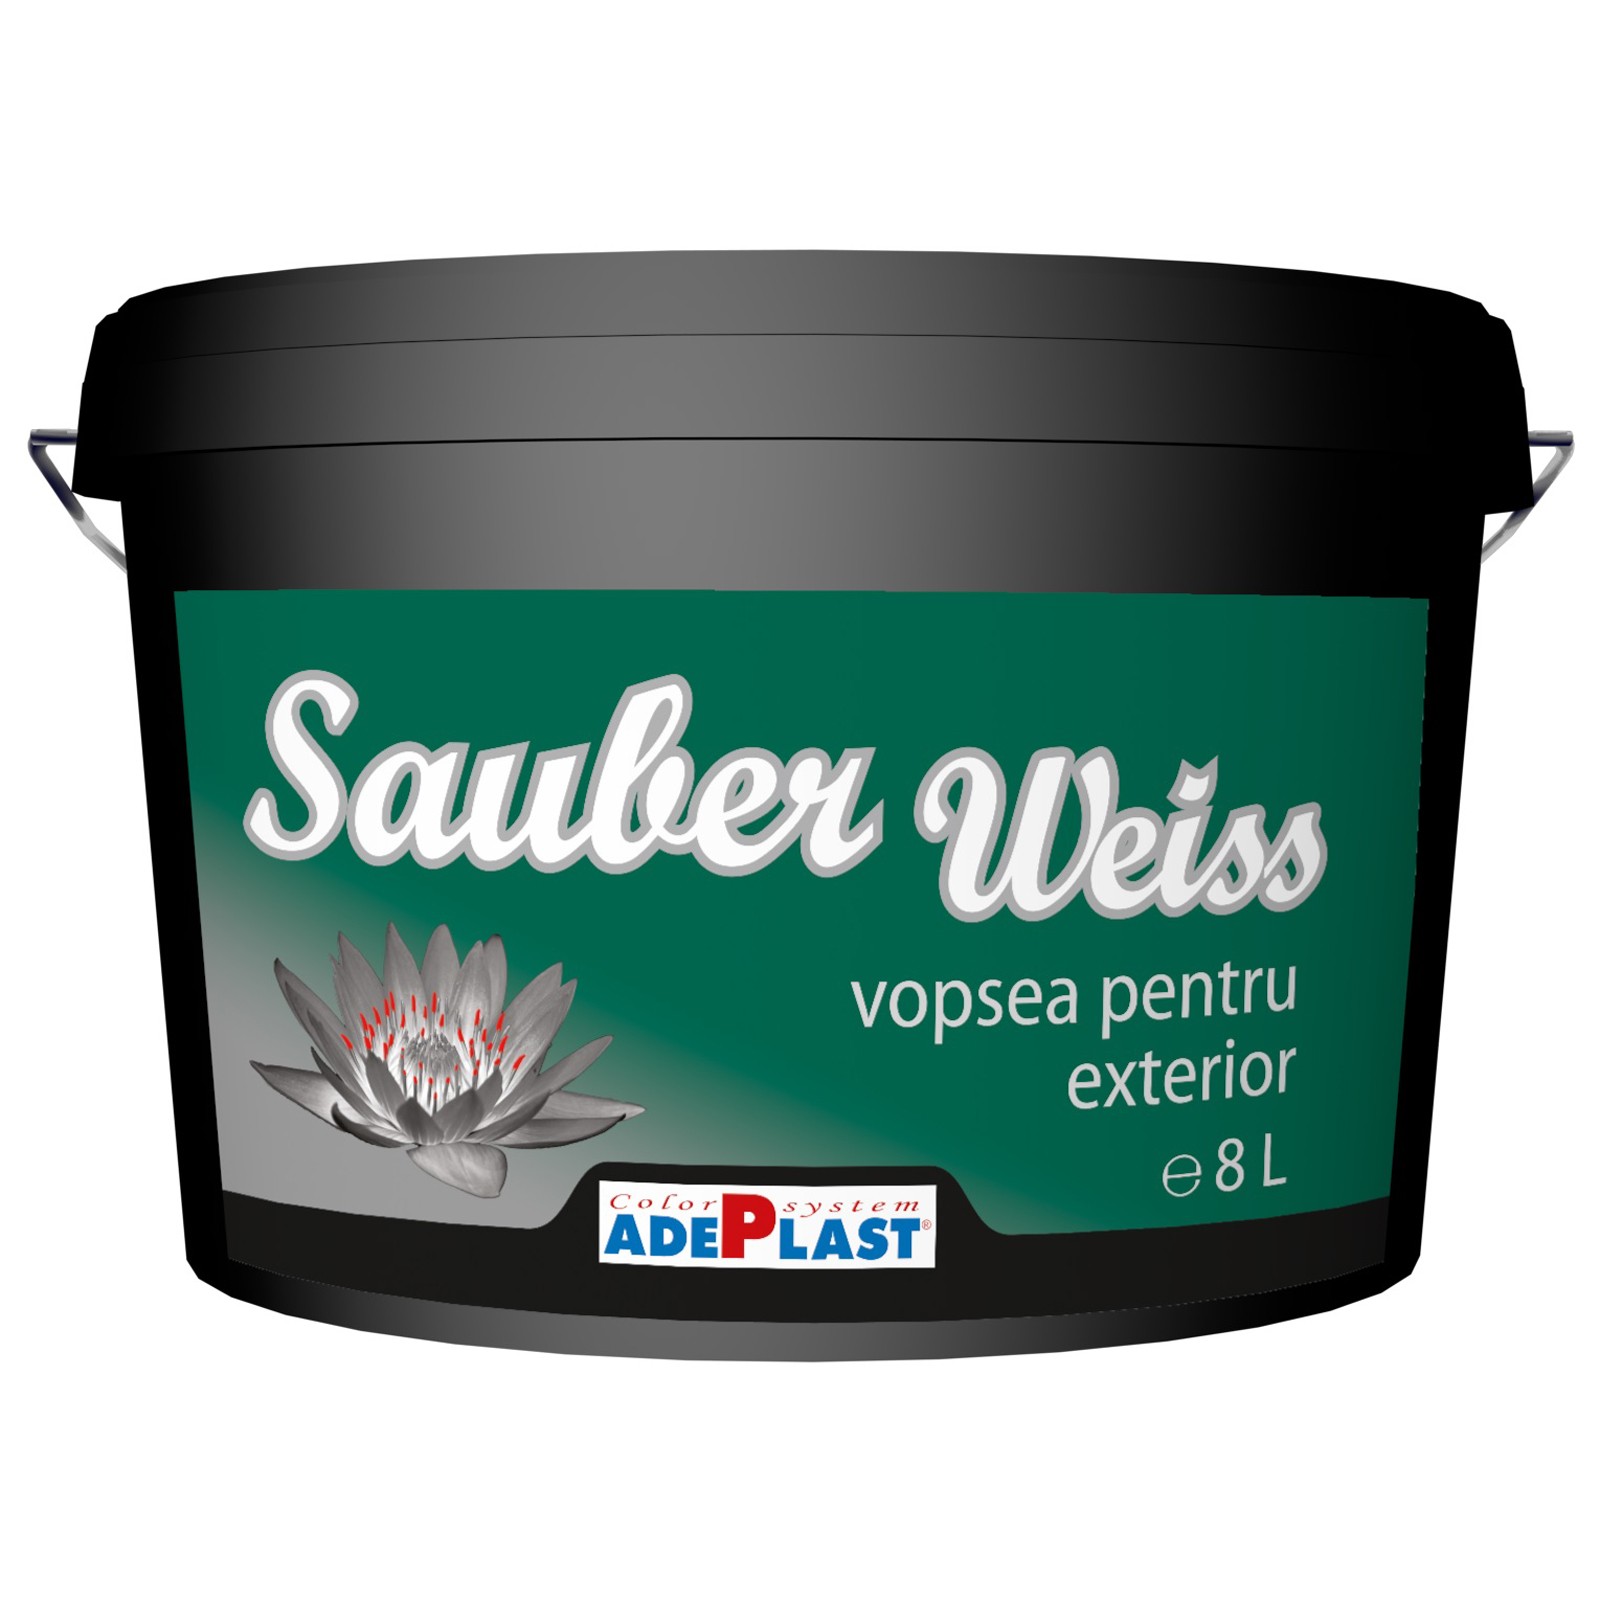 Vopseluri - Vopsea lavabila pentru exterior Adeplast Sauber Weiss alba 8L, https:maxbau.ro